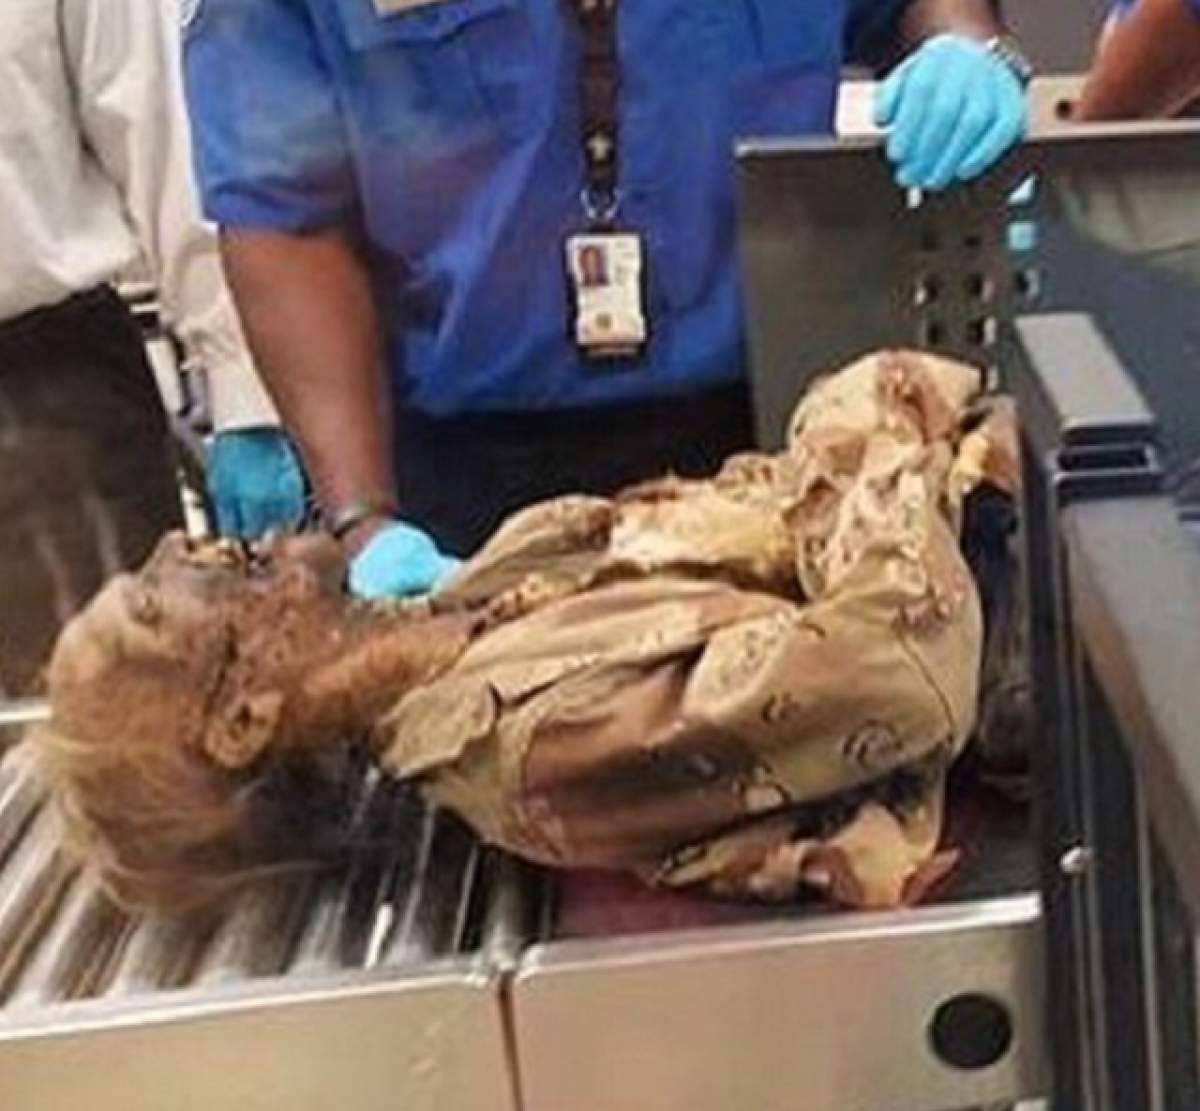 SCENE BIZARE pe aeroport! Un "cadavru", controlat de ofiţerii de securitate